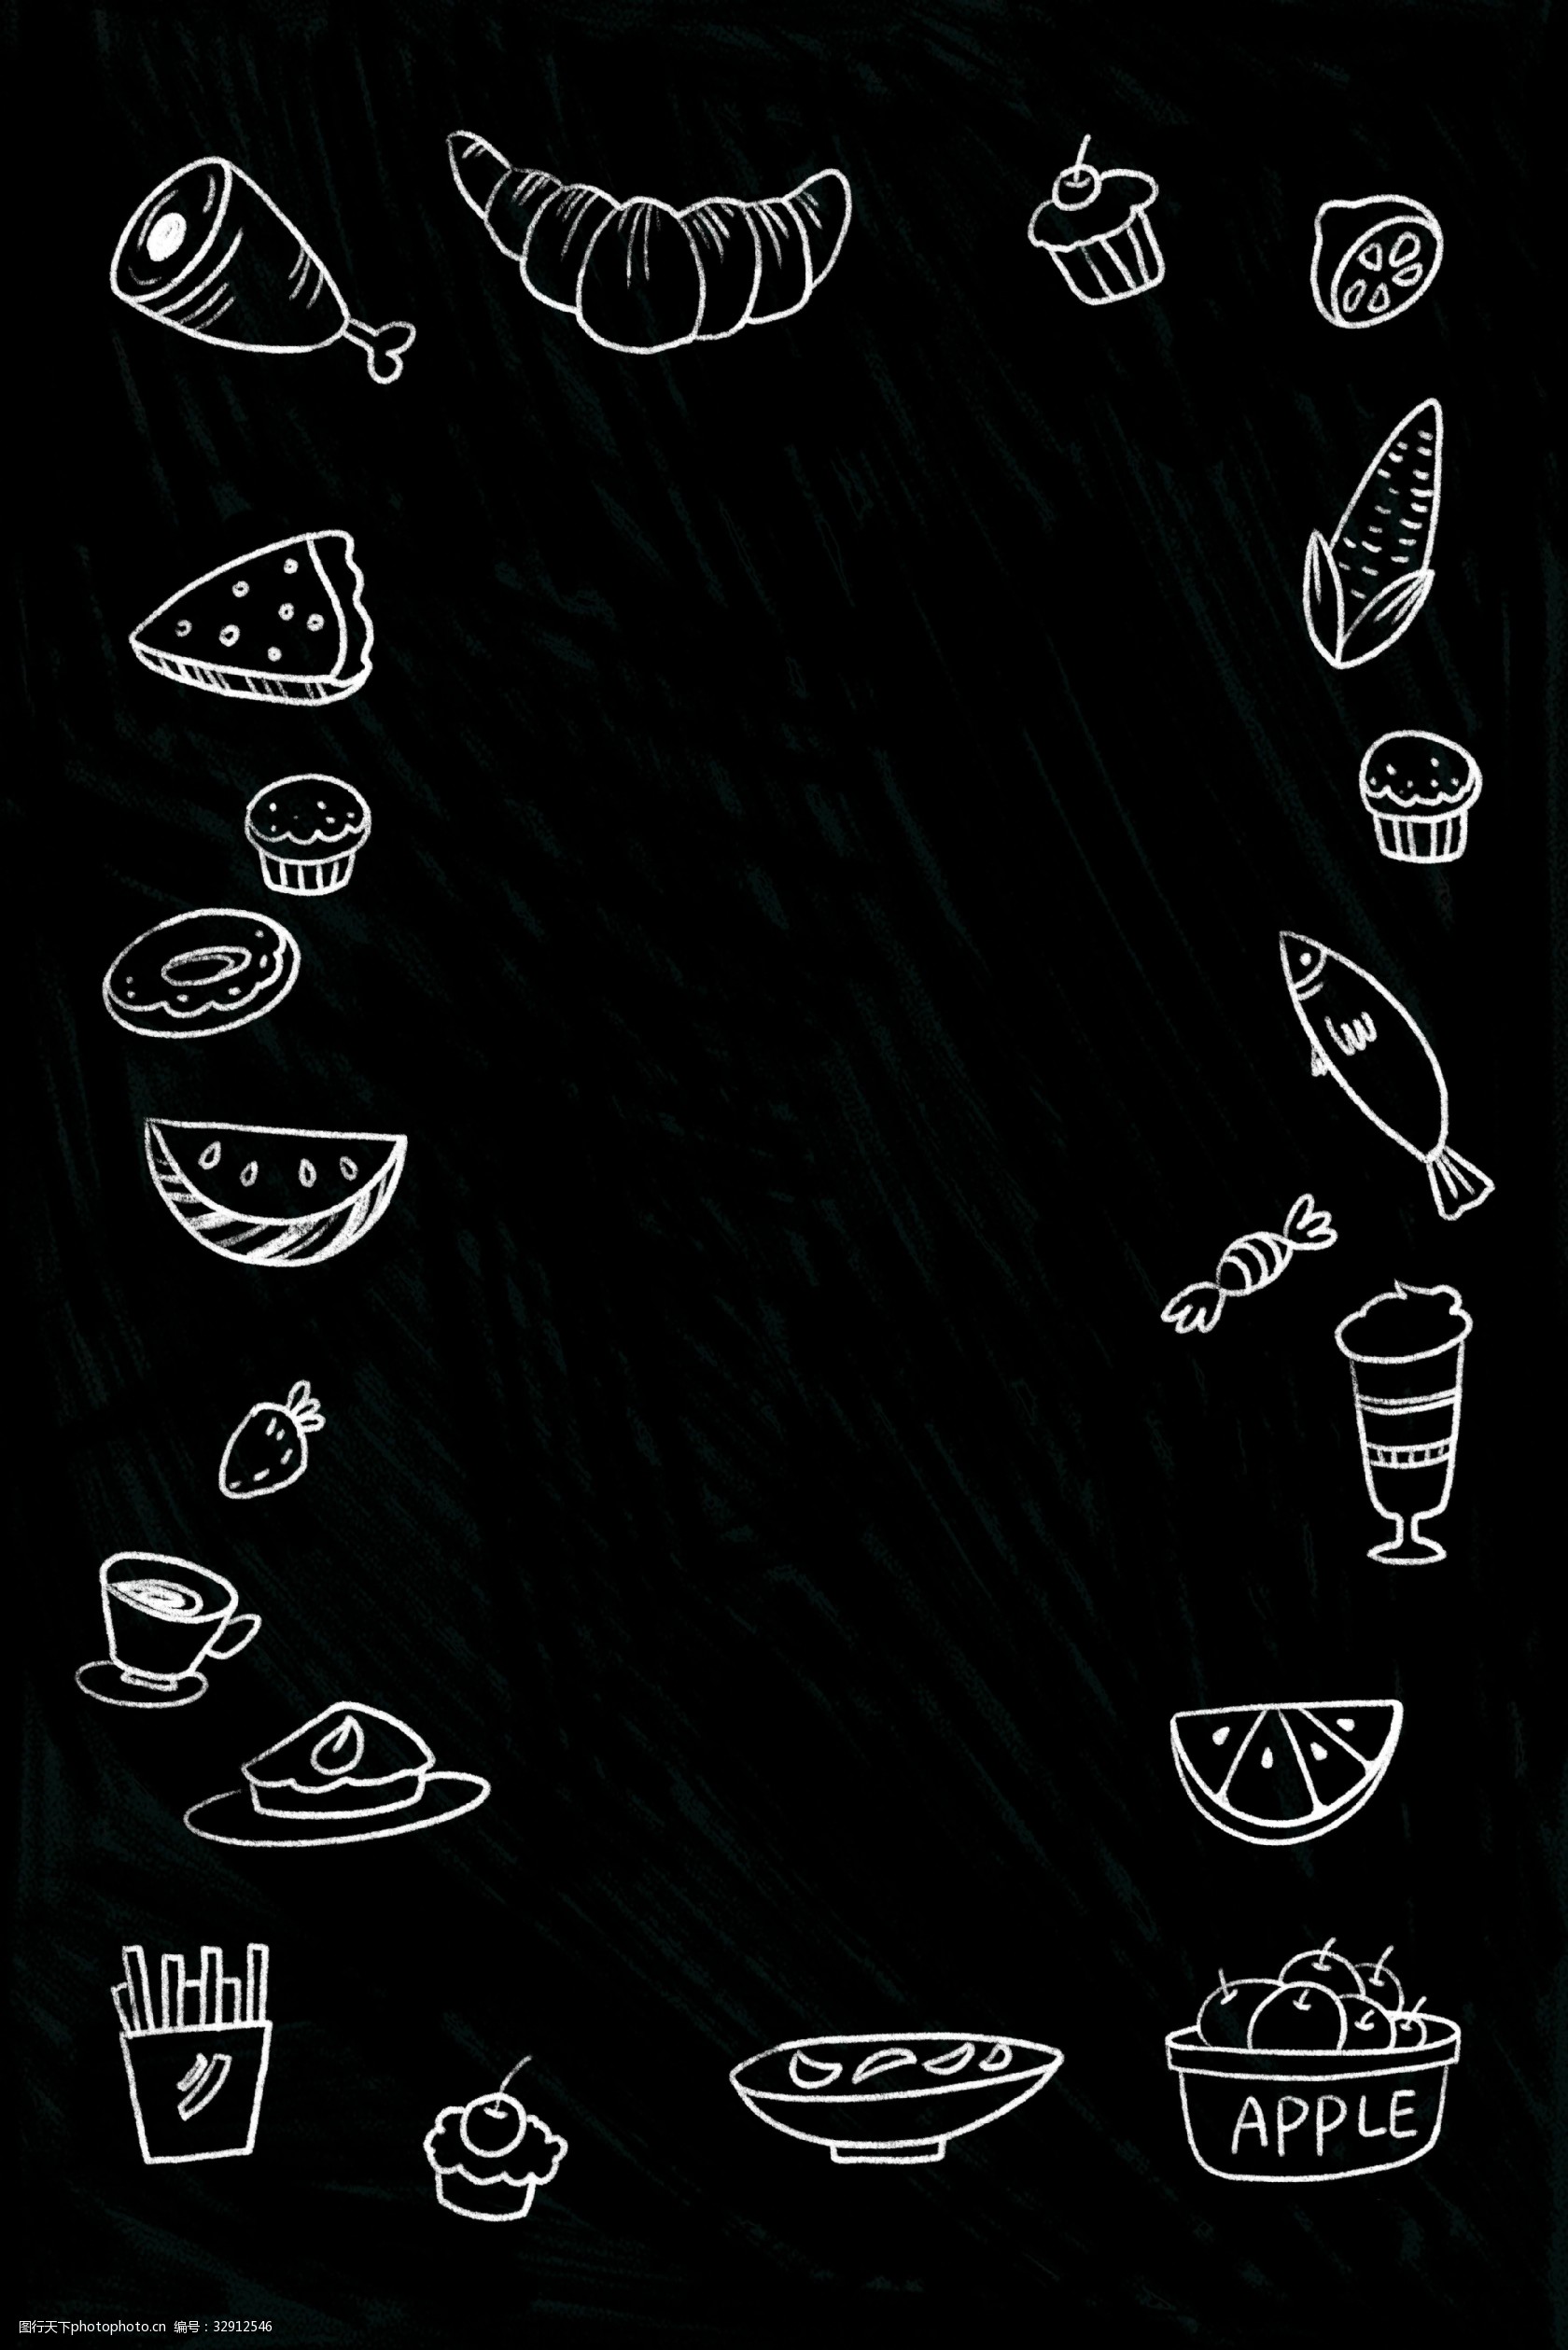 关键词:美食黑白简笔黑板画 黑白 食物 简笔画 美食 面包 甜品 饮料